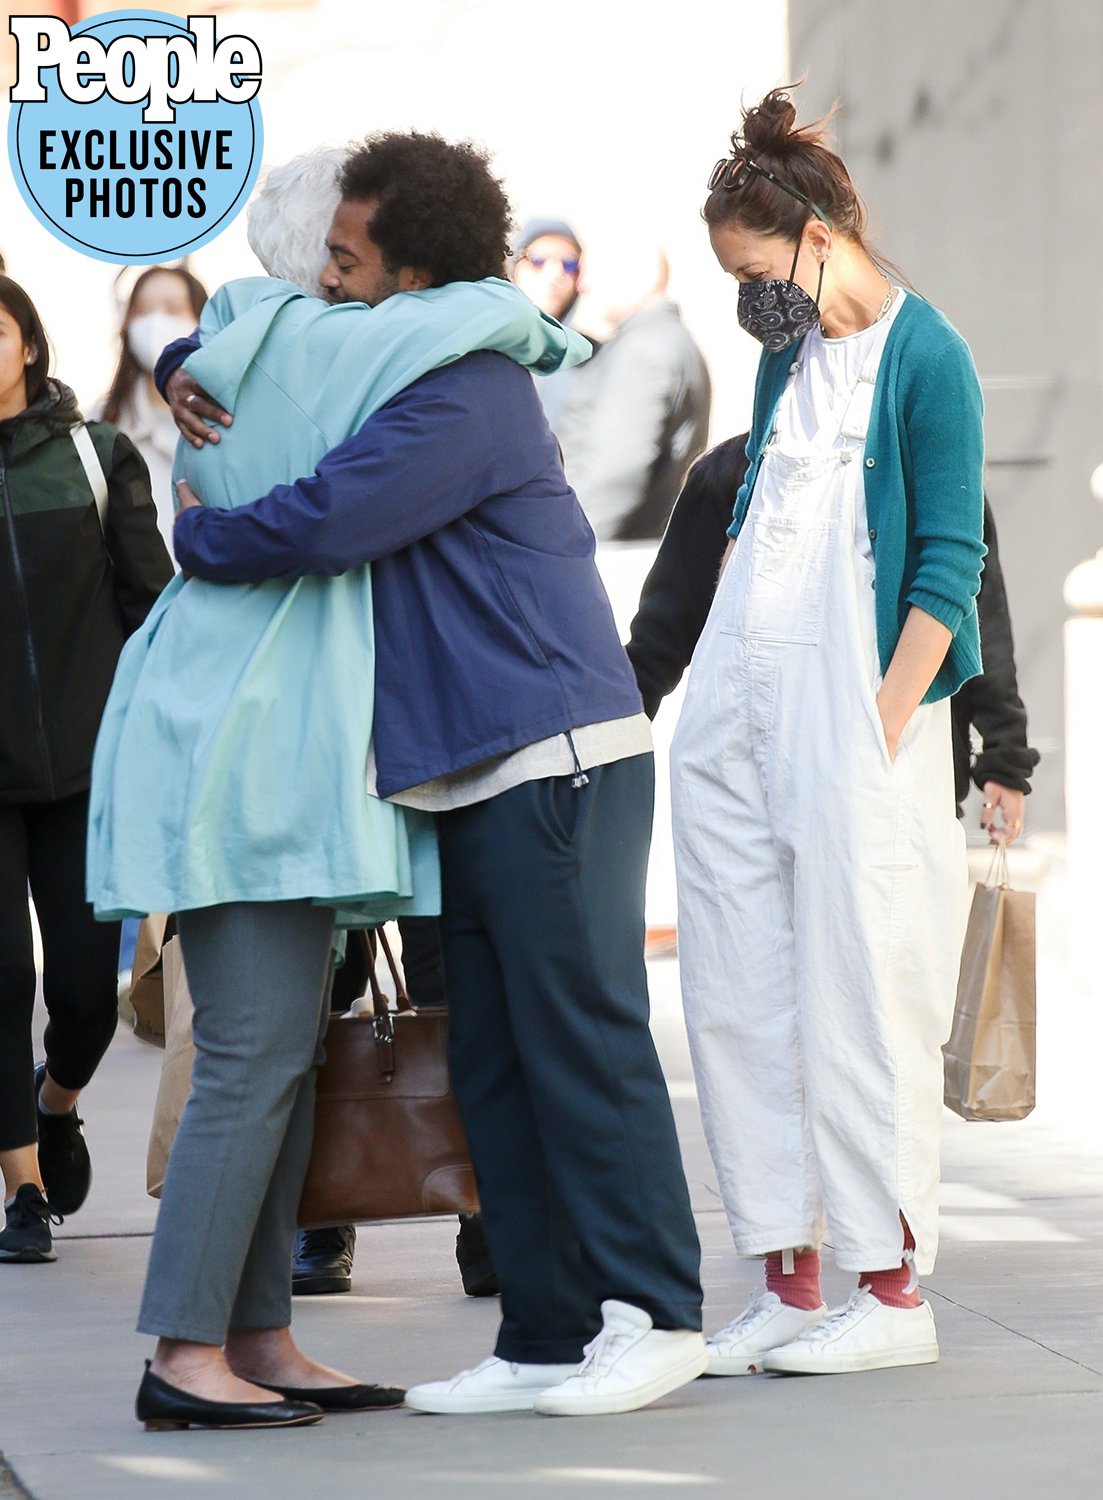 Bobby Wooten III còn có khoảnh khắc dành cái ôm thân thiện dành cho mẹ của bạn gái nơi công cộng.